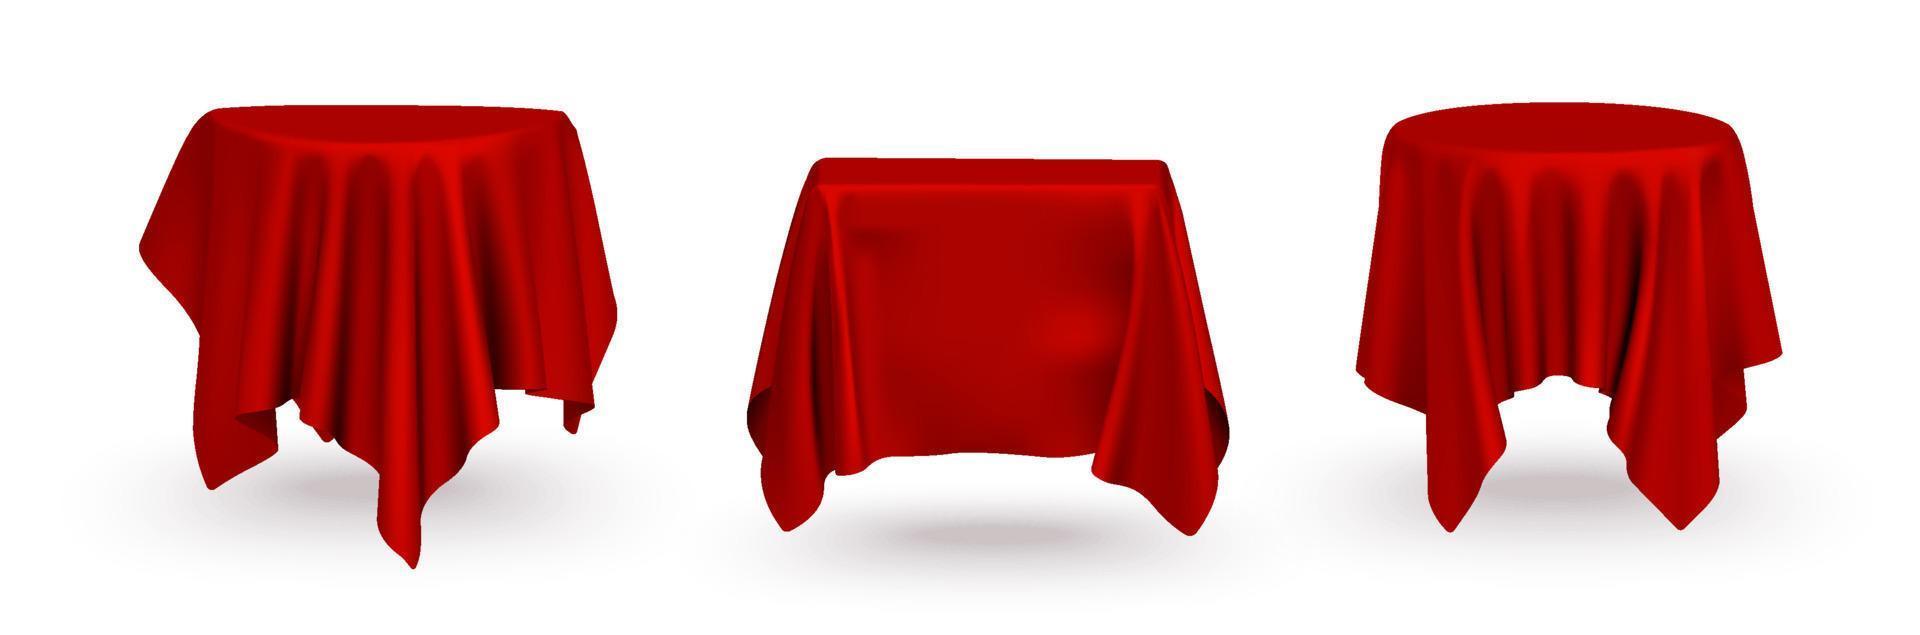 conjunto de mesa de tela de seda roja realista vacía, escenario, plantilla de vector de cortina de podio para la presentación del producto